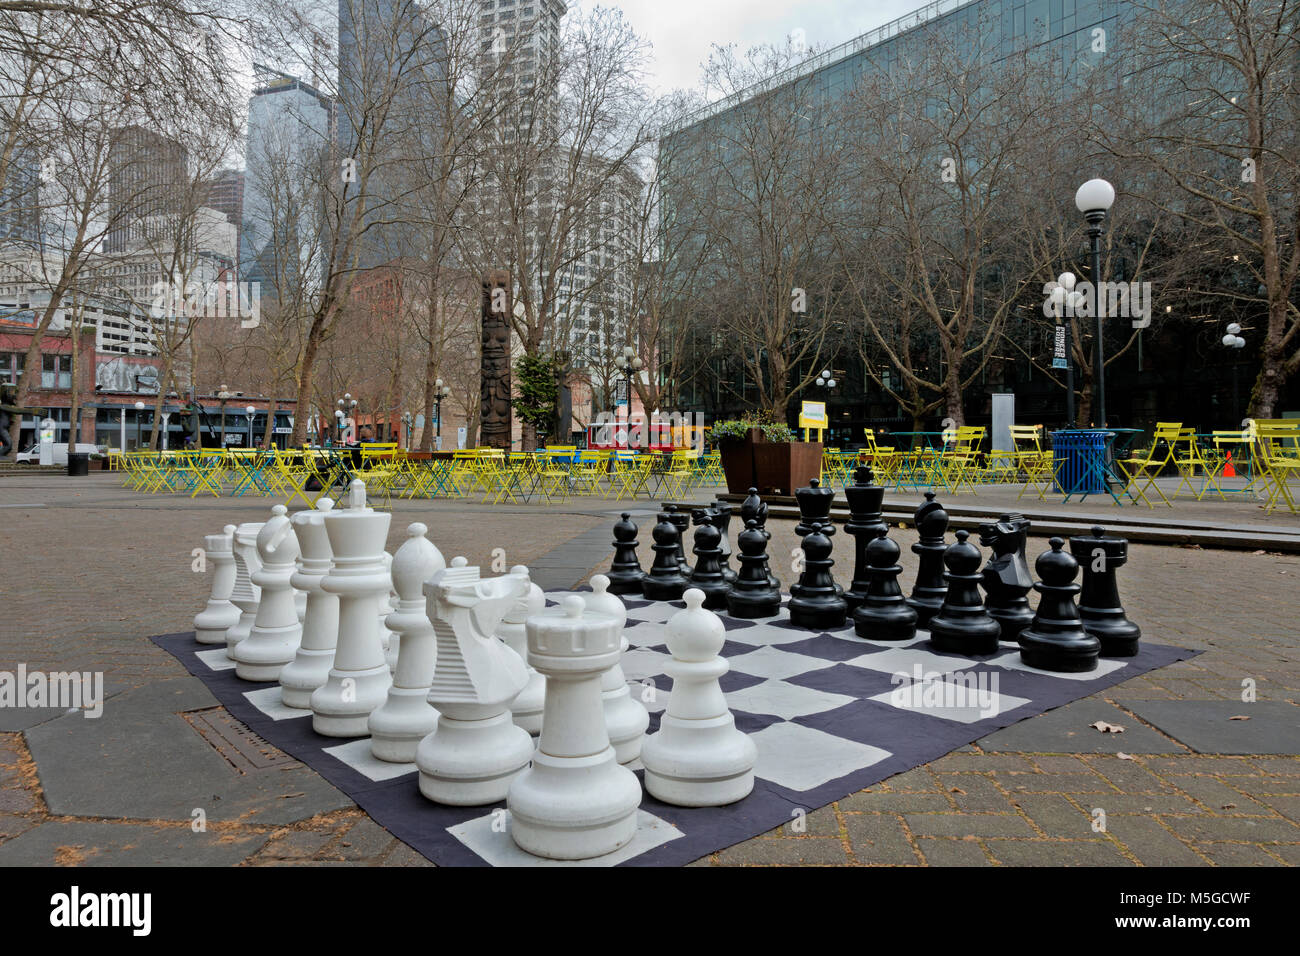 WA13664-00...WASHINGTON - grande set di scacchi all'aperto, tavoli, sedie, tavoli da ping pong e biliardini all'Occidental Park. 2017 Foto Stock